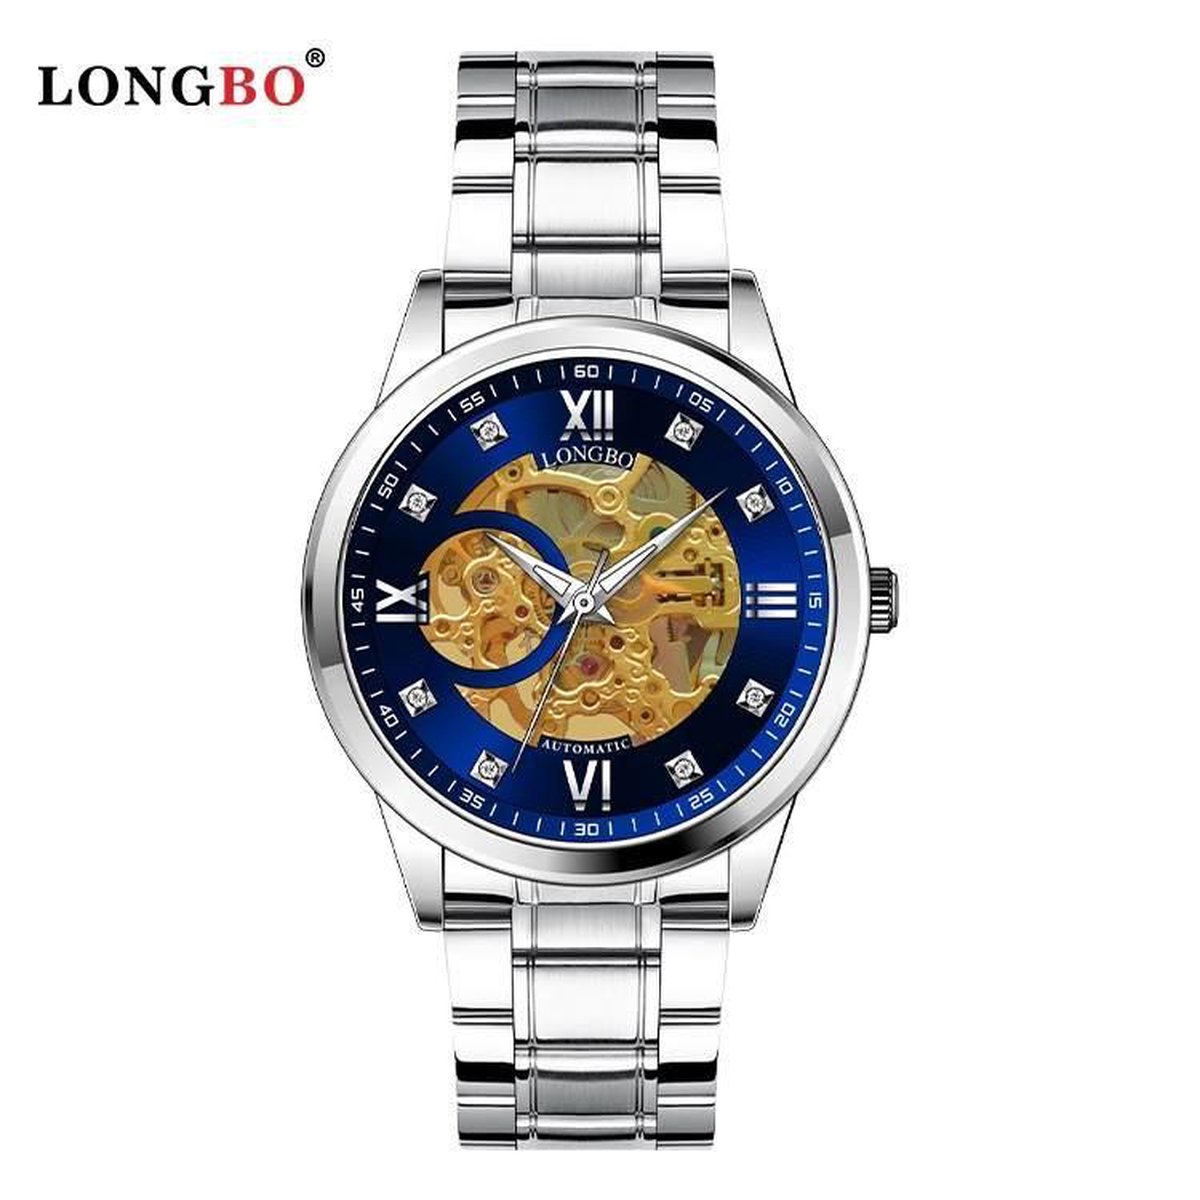 Longbo - Unisex Horloge - Skeleton - Zilveren Stalen Band - Zilver-Blauw-Goud - 40mm - Automatic